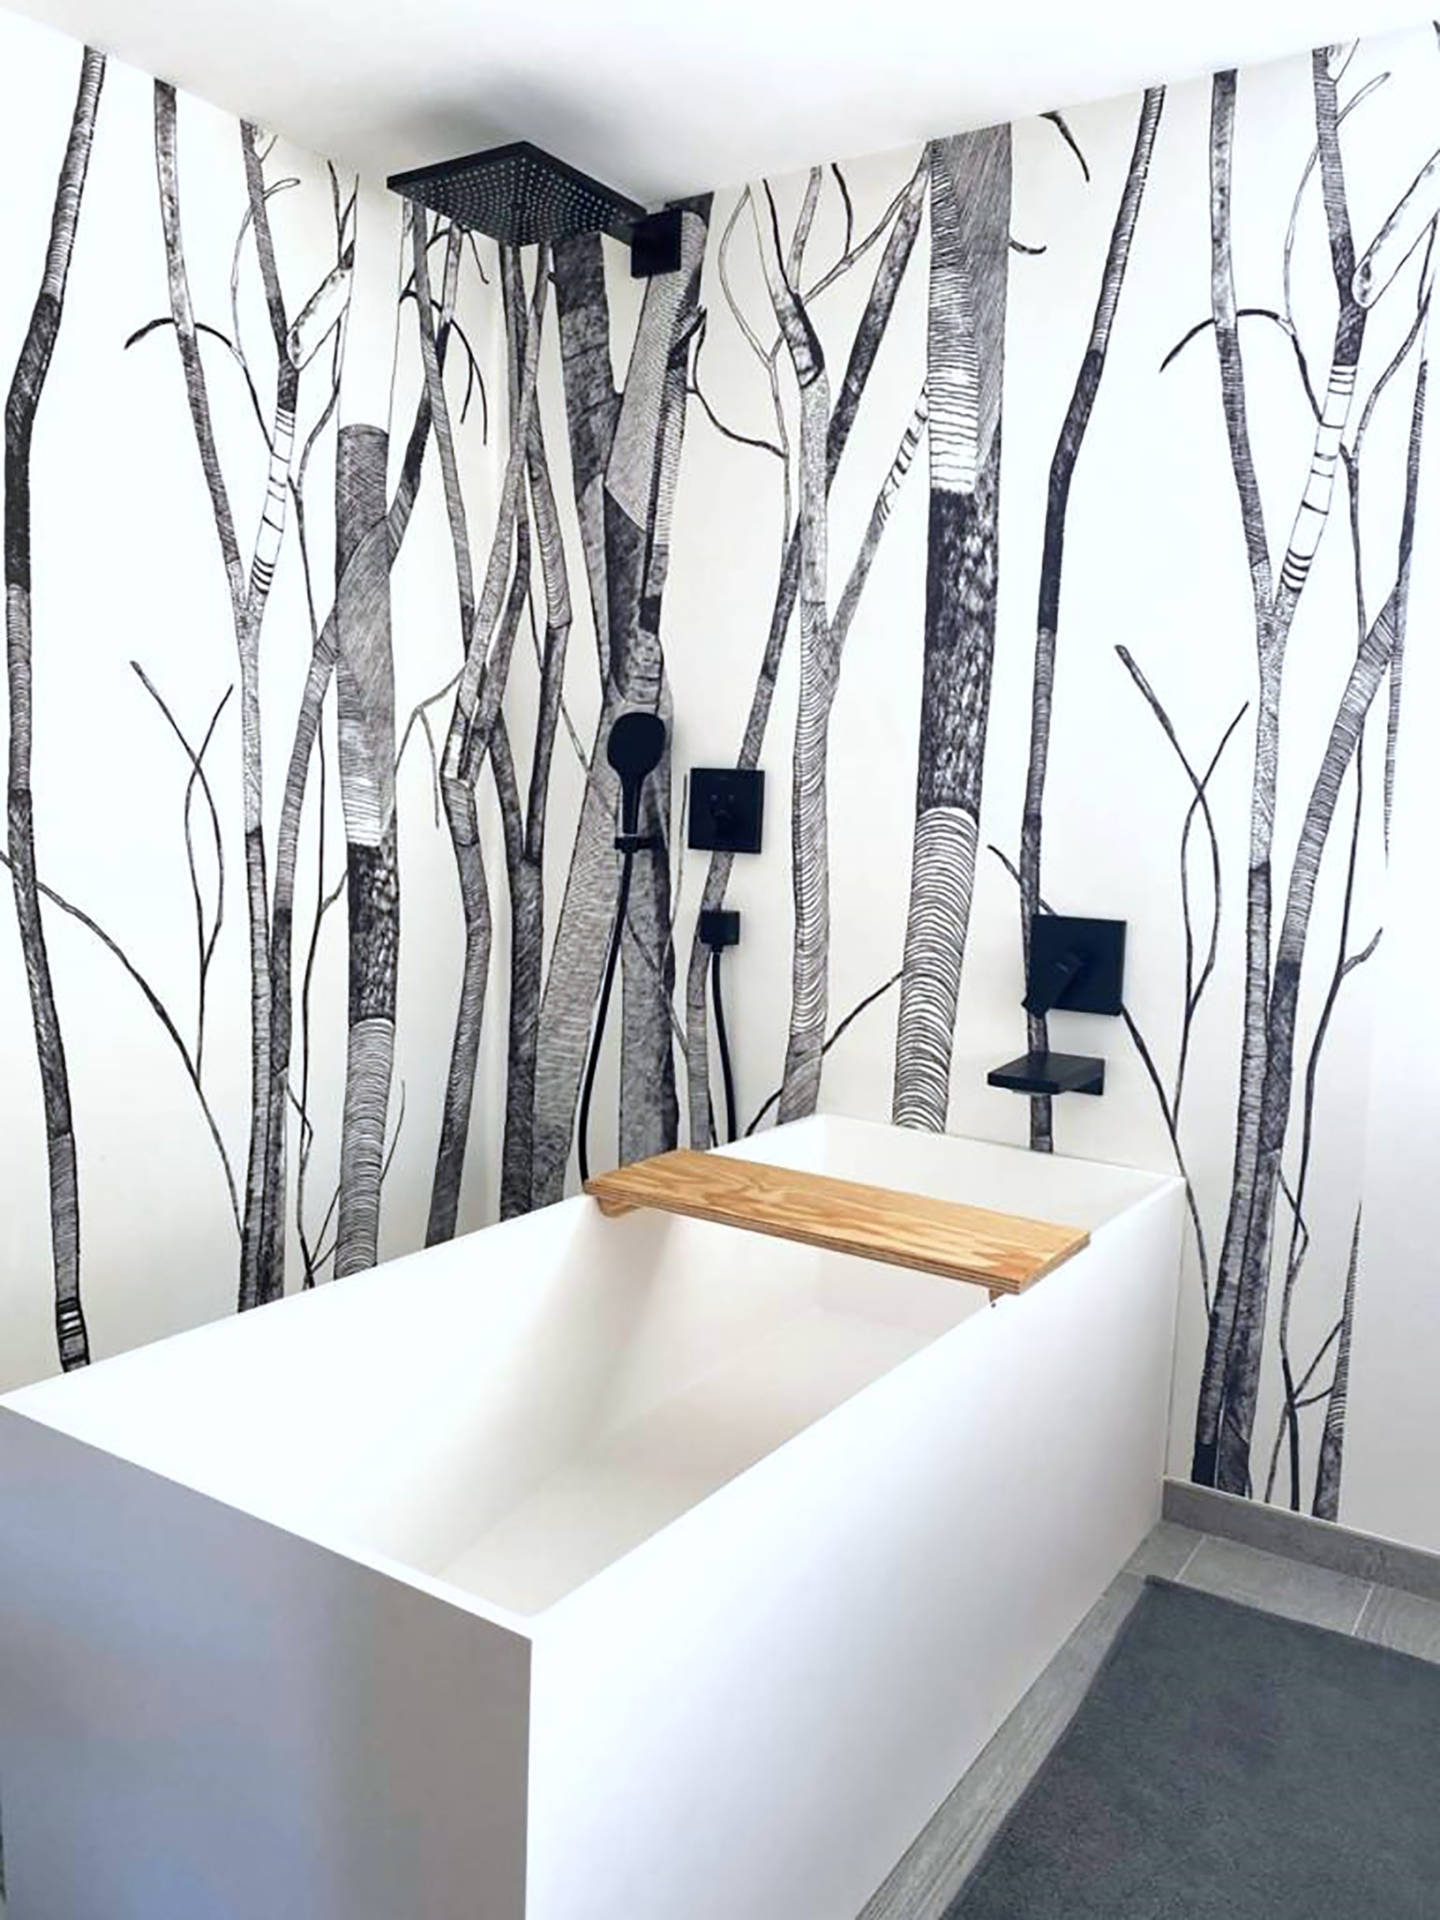 Conception salle de bain et matériaux éco responsable par Anne Solenn Chérat, Décoratrice UFDI sur Lorient, Vannes, Quimper.